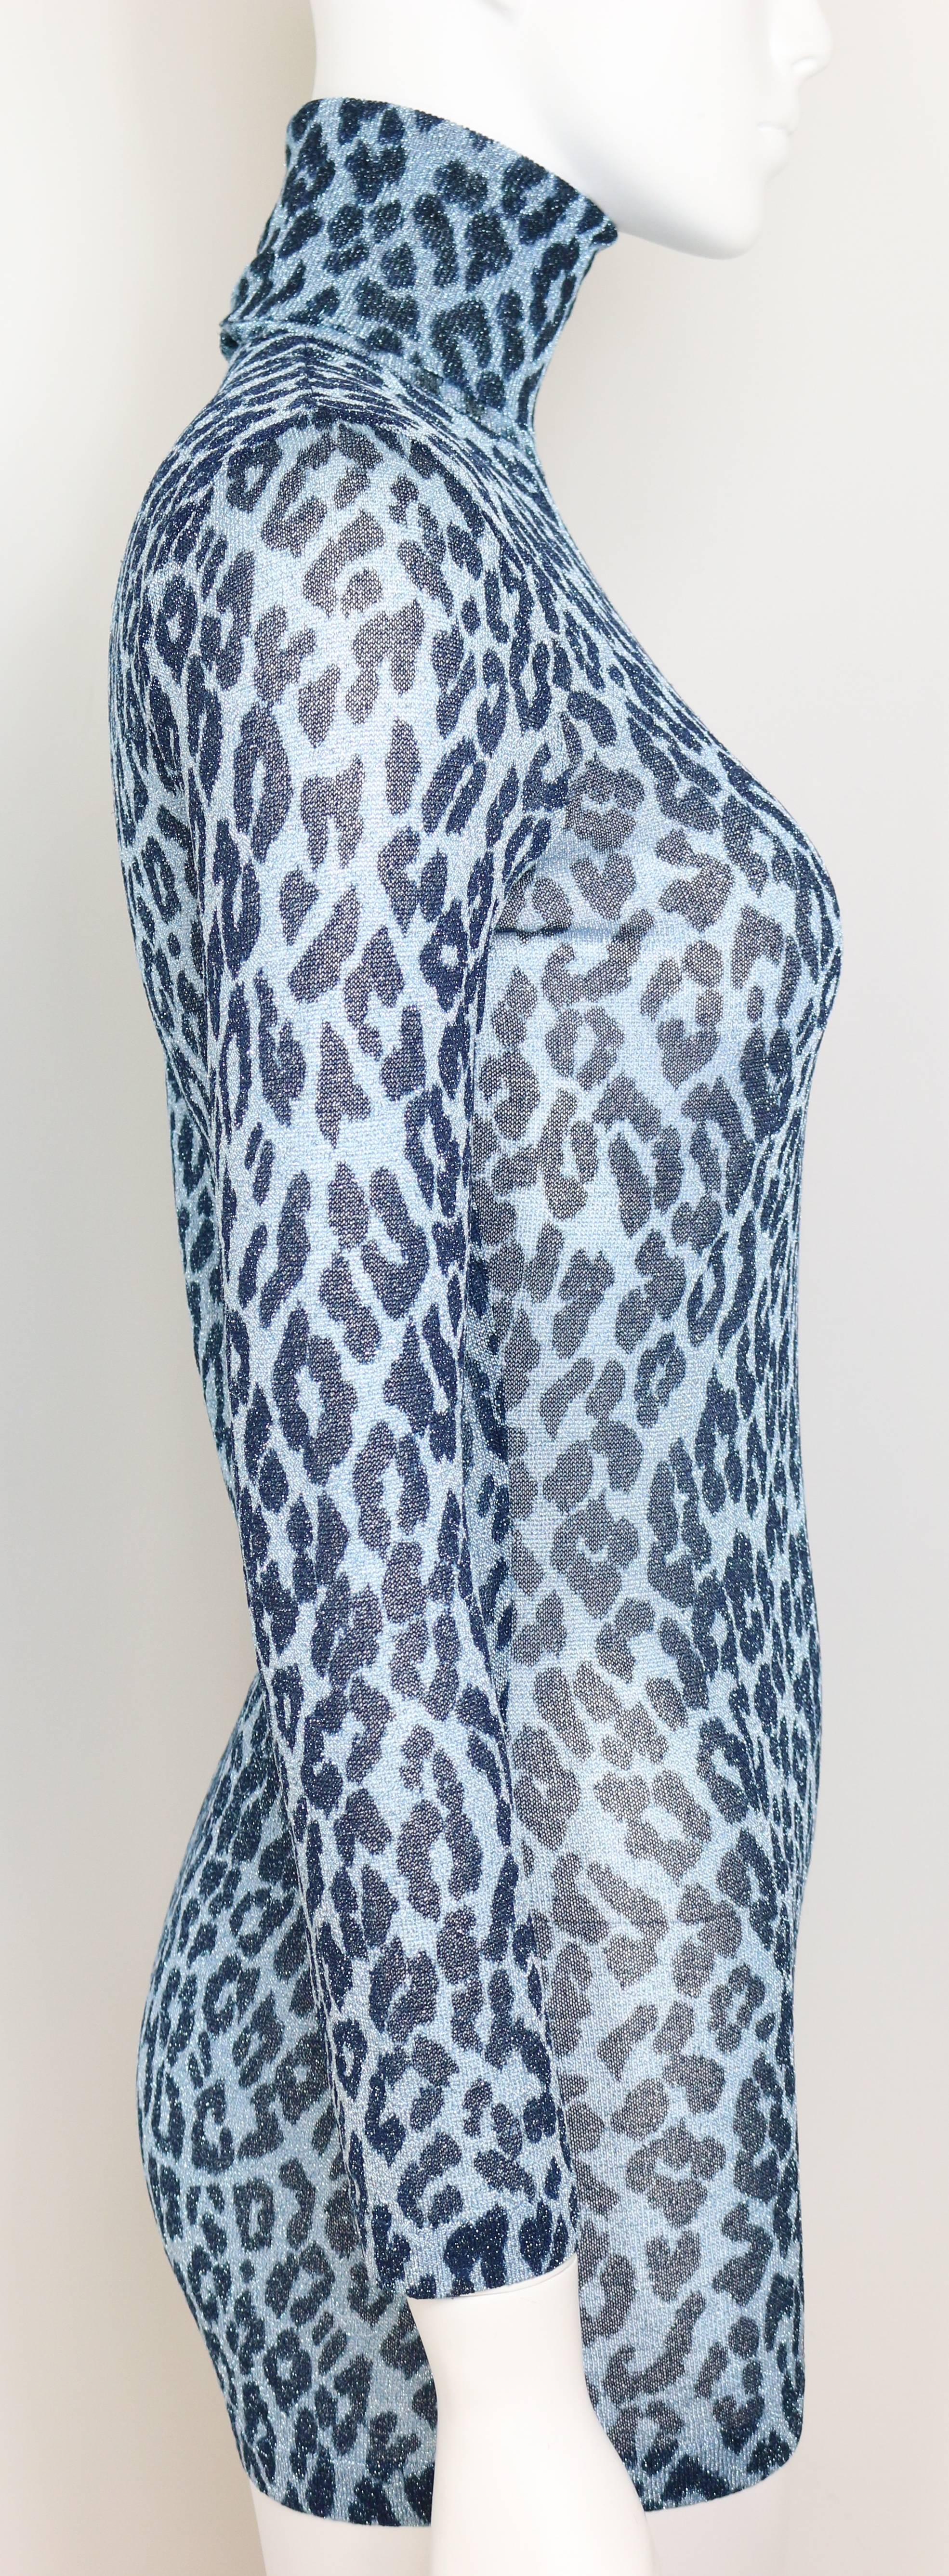 blue leopard print dress